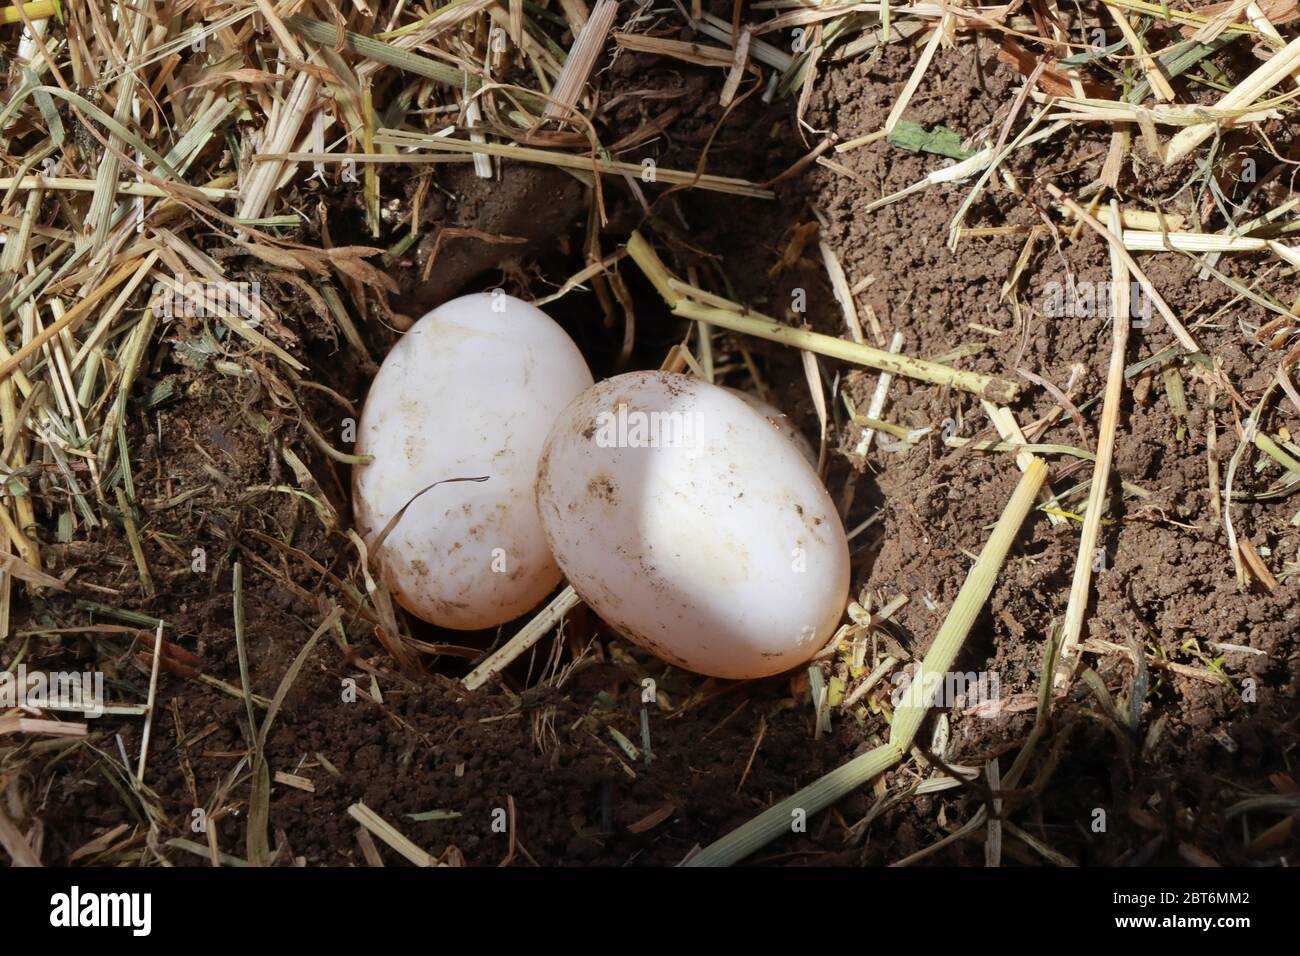 Une tortue hermanne a creusé un trou dans le sol et y a mis 6 oeufs. Deux œufs sont visibles. Banque D'Images